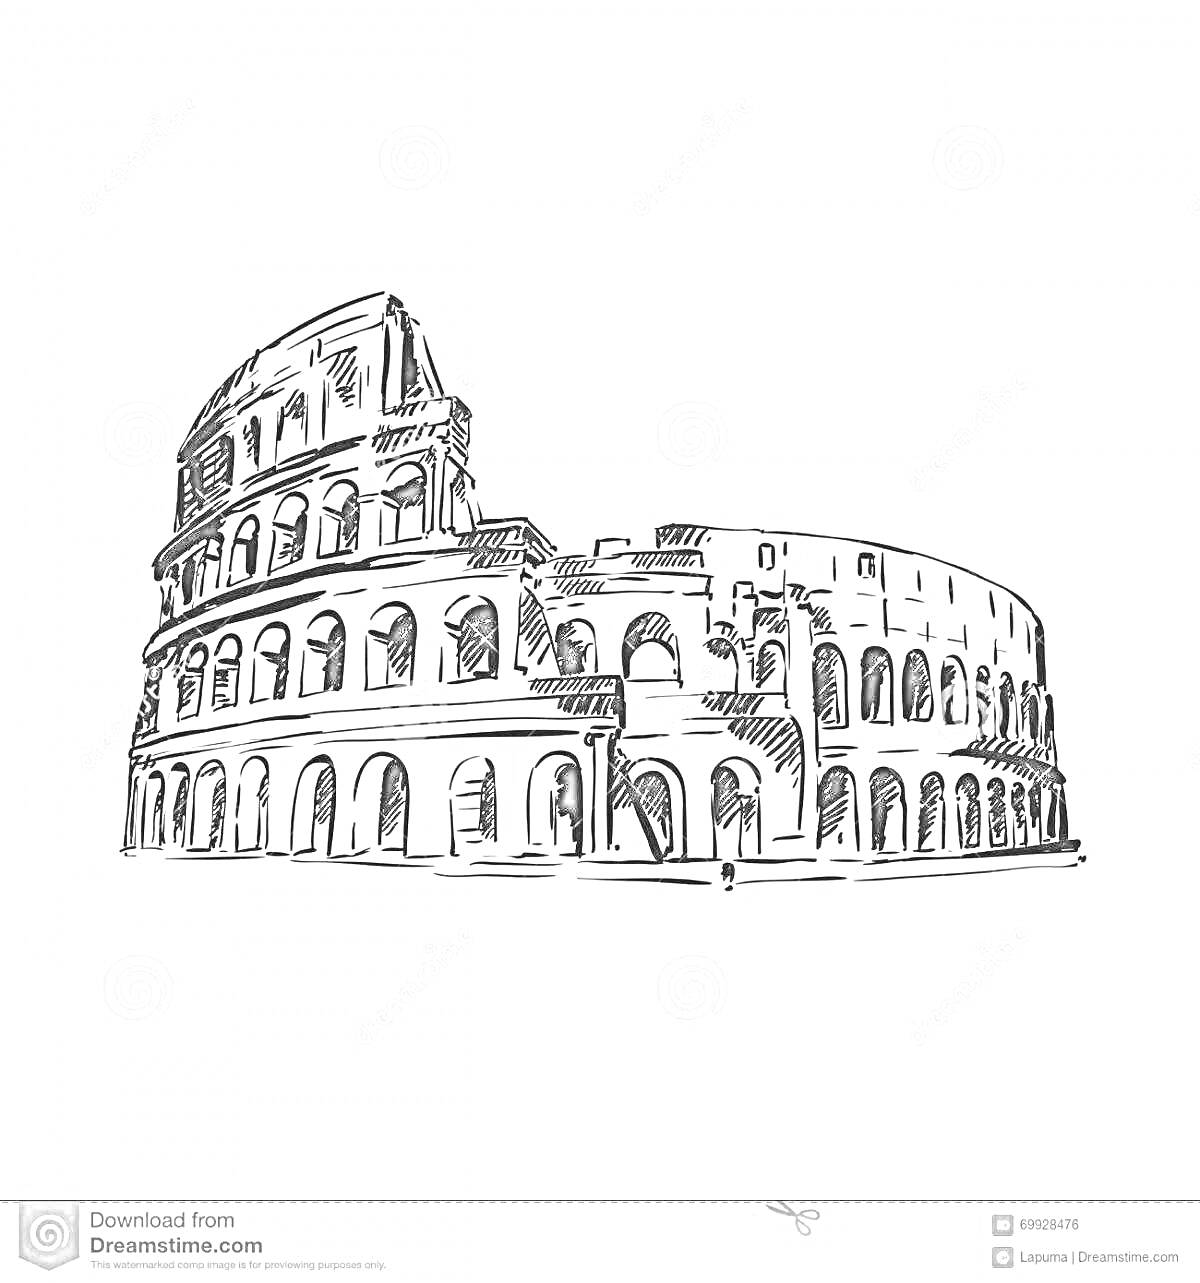 Раскраска Колизей с арками и разрушенной верхней частью